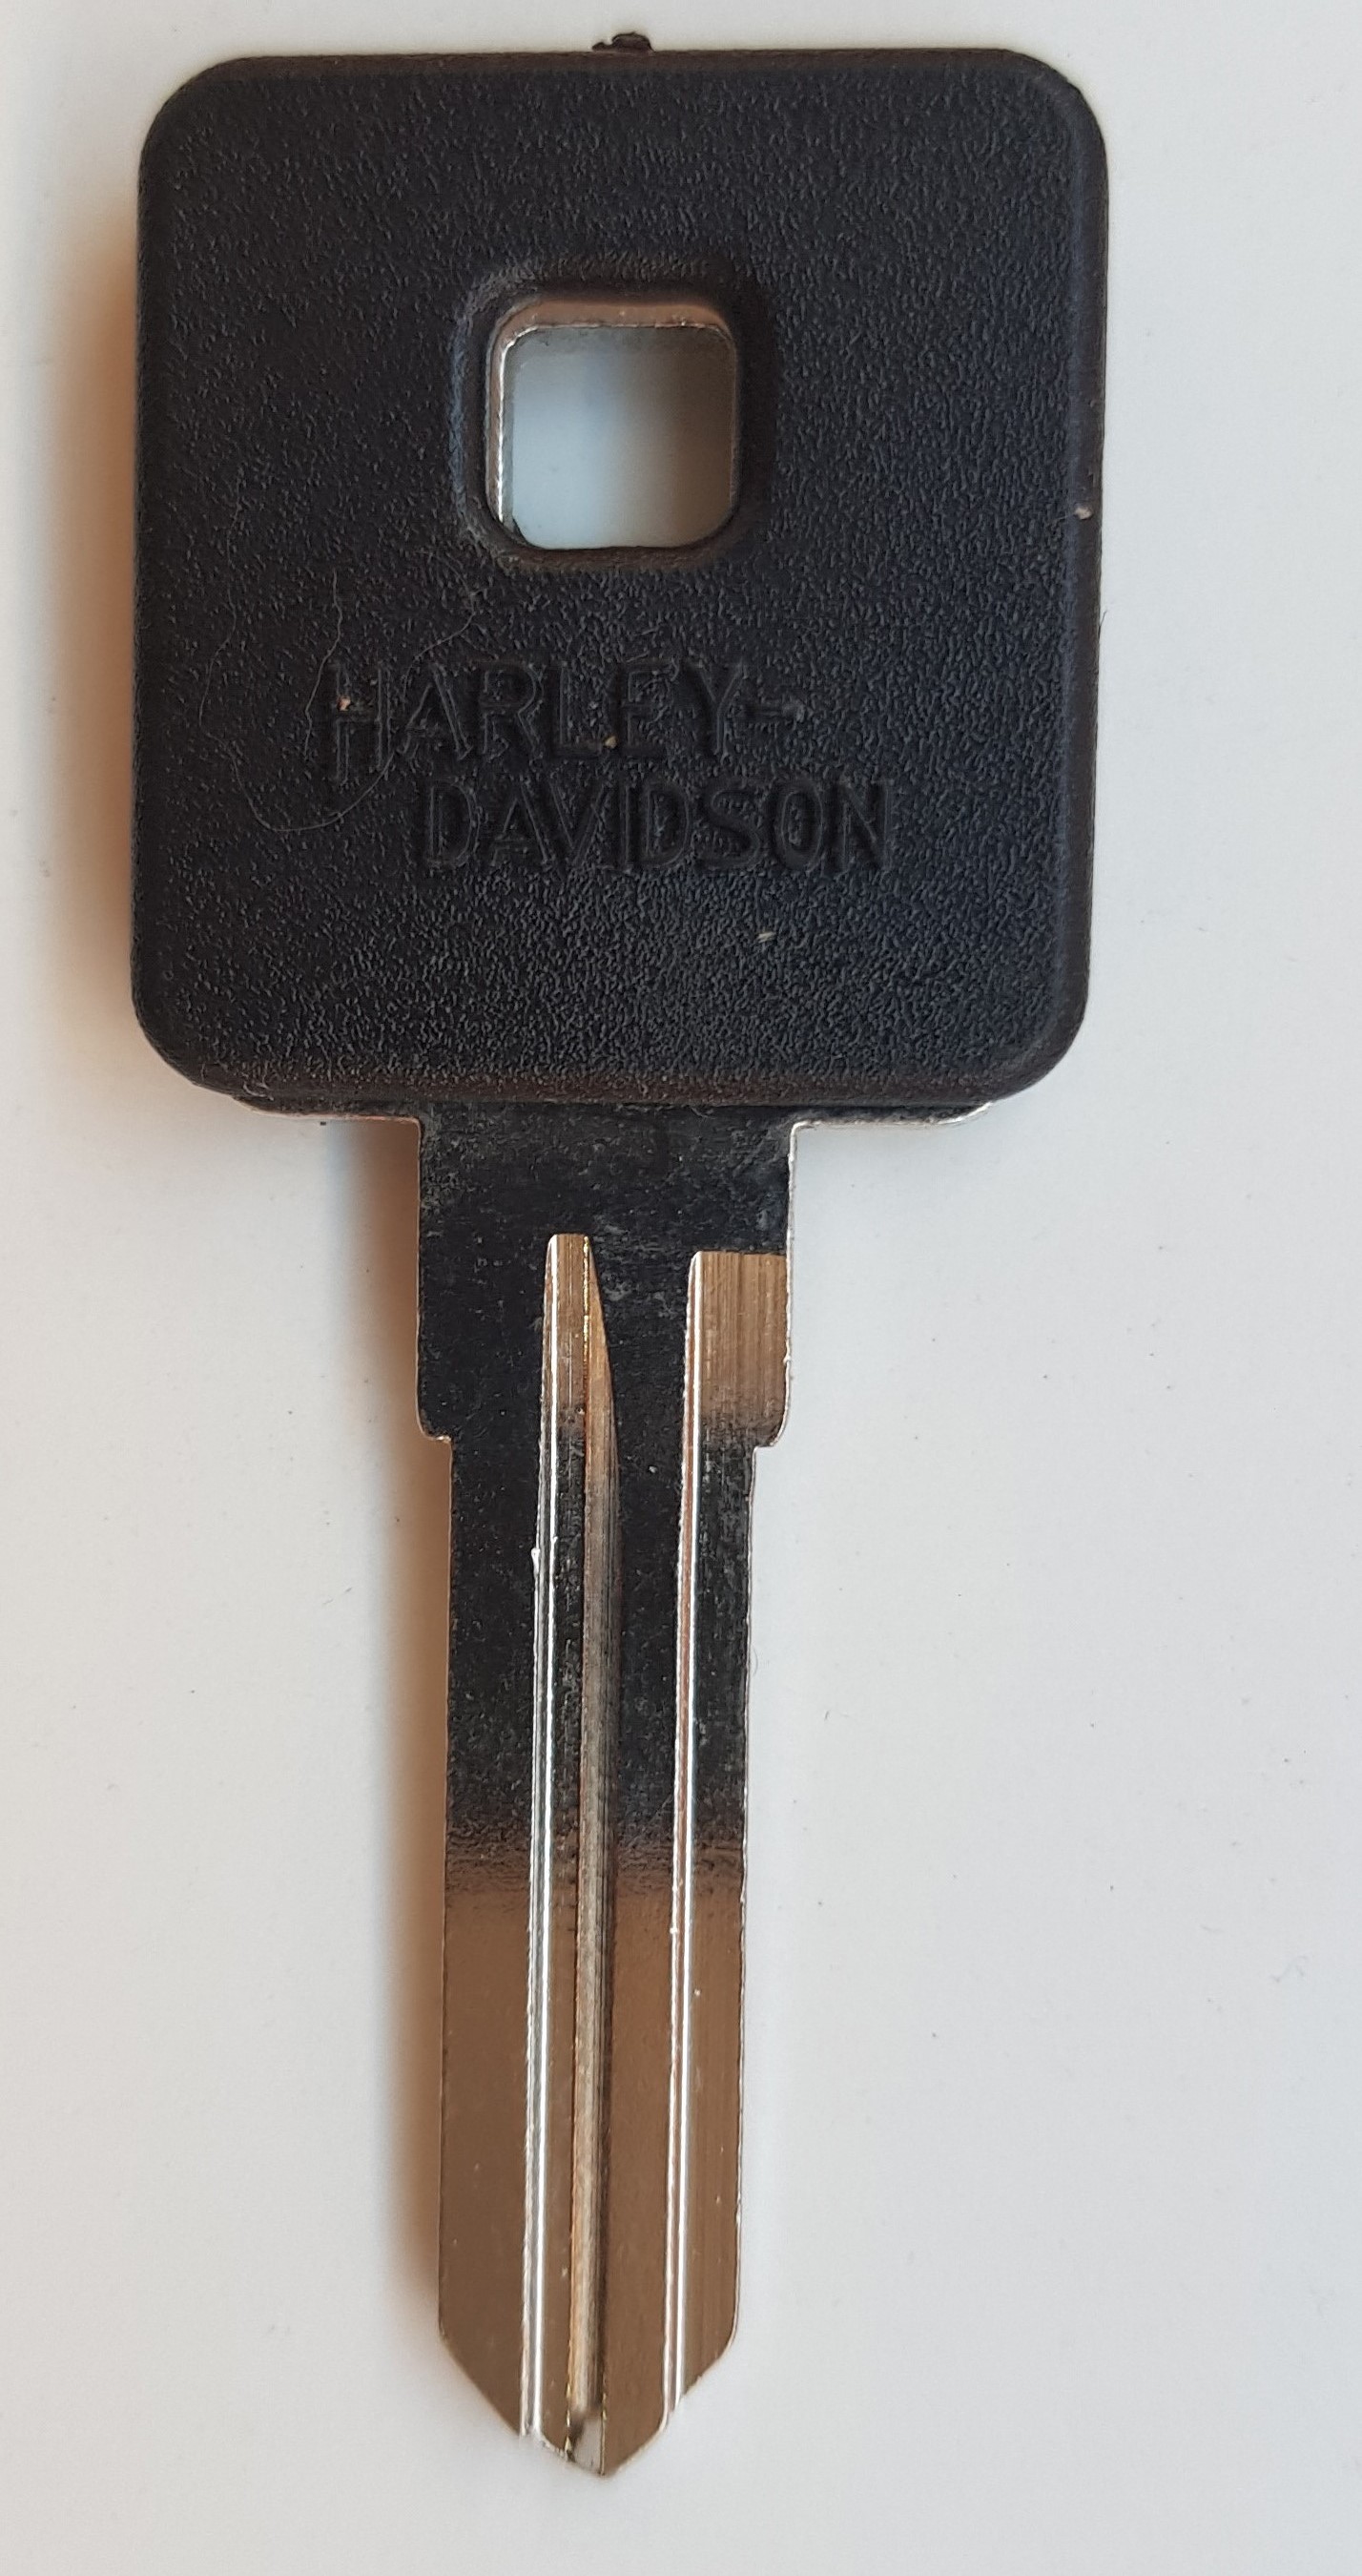 CARCASA MOTO HARLEY DAVIDSON PERFIL HD95